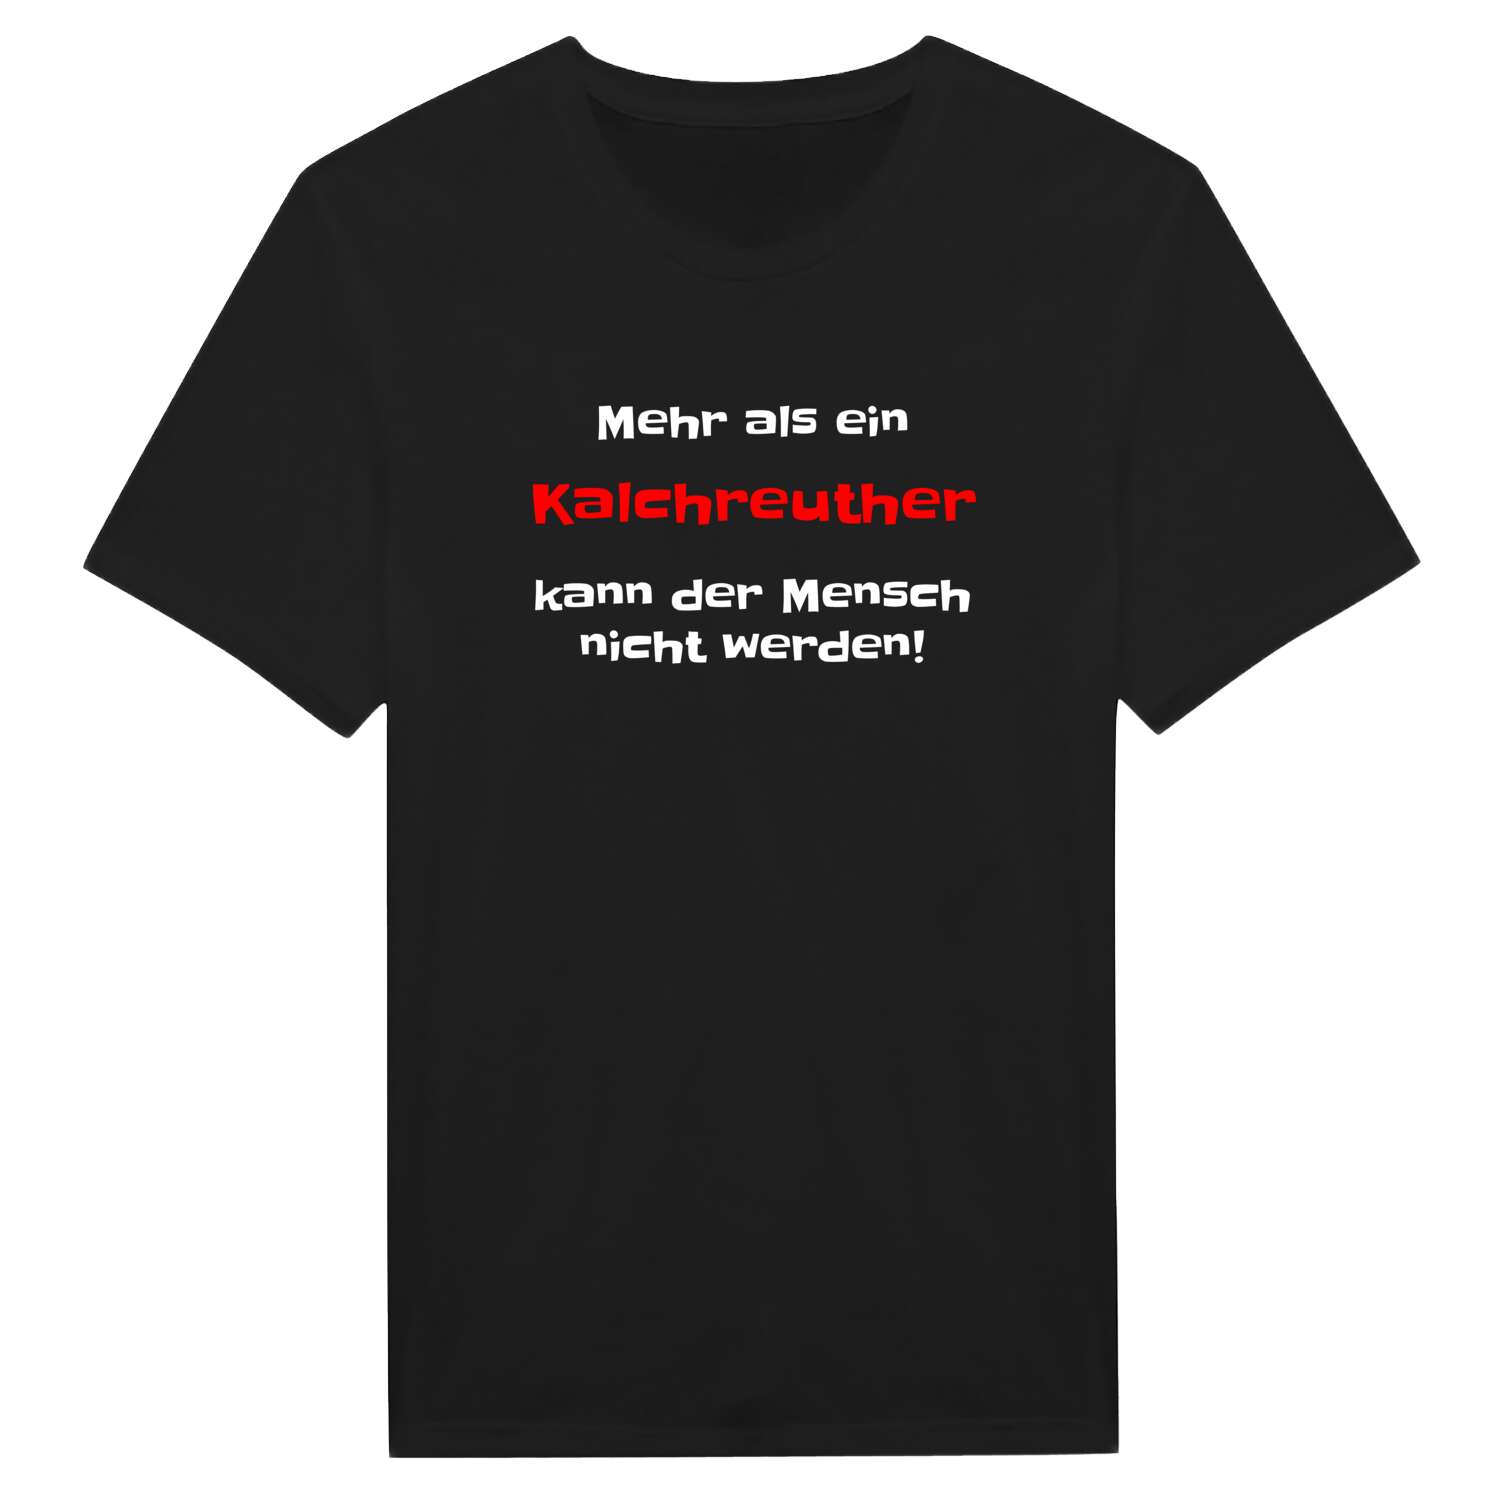 Kalchreuth T-Shirt »Mehr als ein«